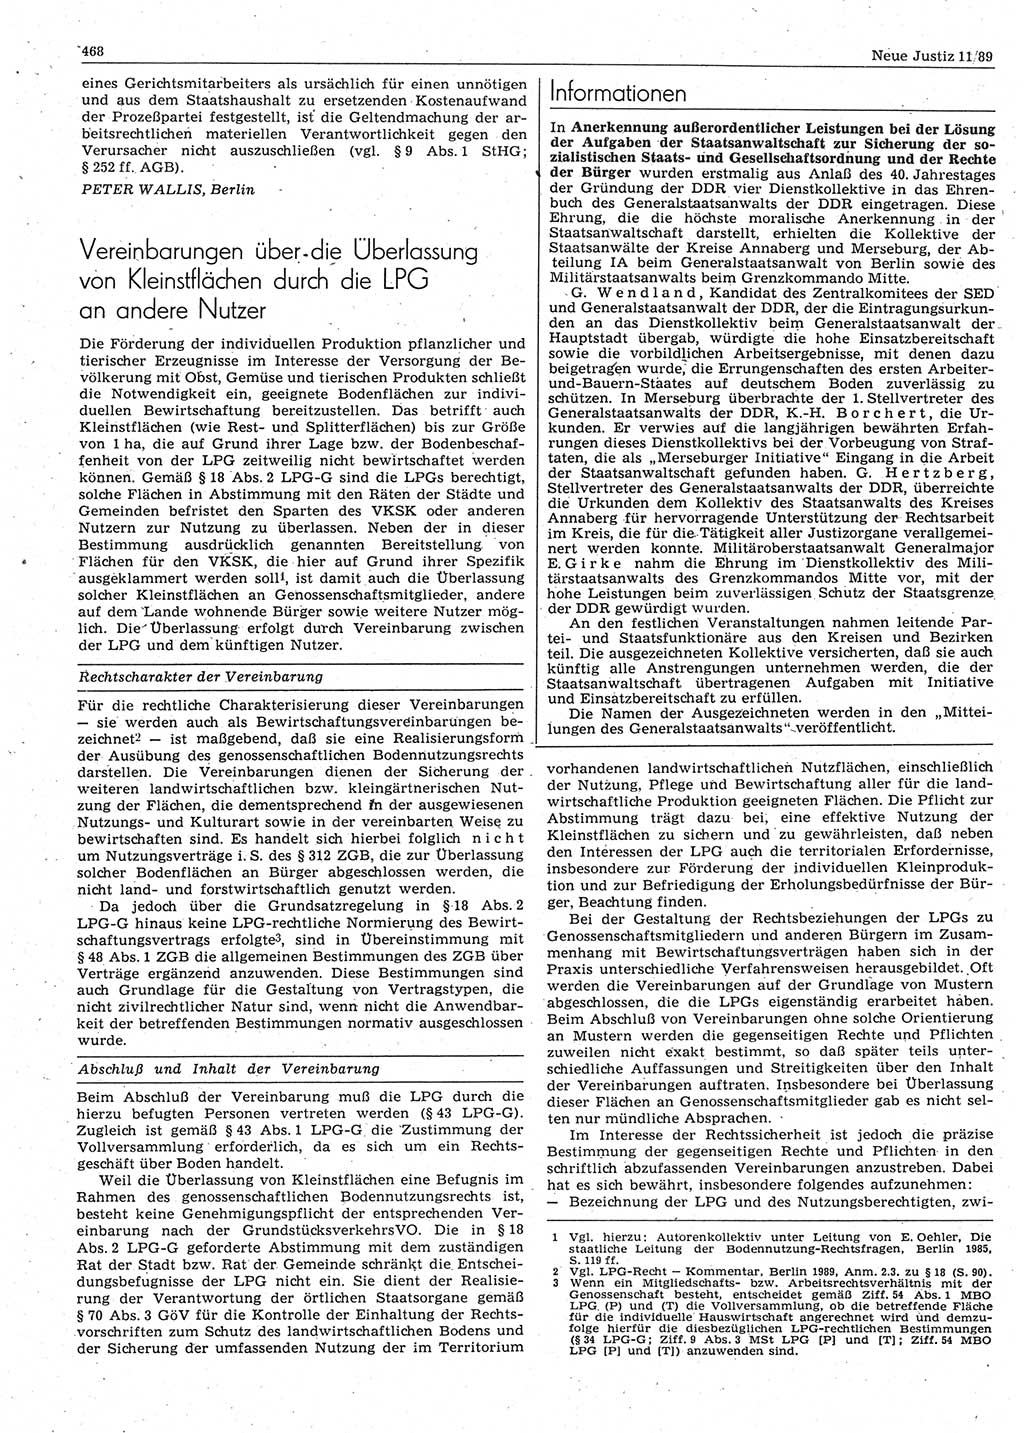 Neue Justiz (NJ), Zeitschrift für sozialistisches Recht und Gesetzlichkeit [Deutsche Demokratische Republik (DDR)], 43. Jahrgang 1989, Seite 468 (NJ DDR 1989, S. 468)